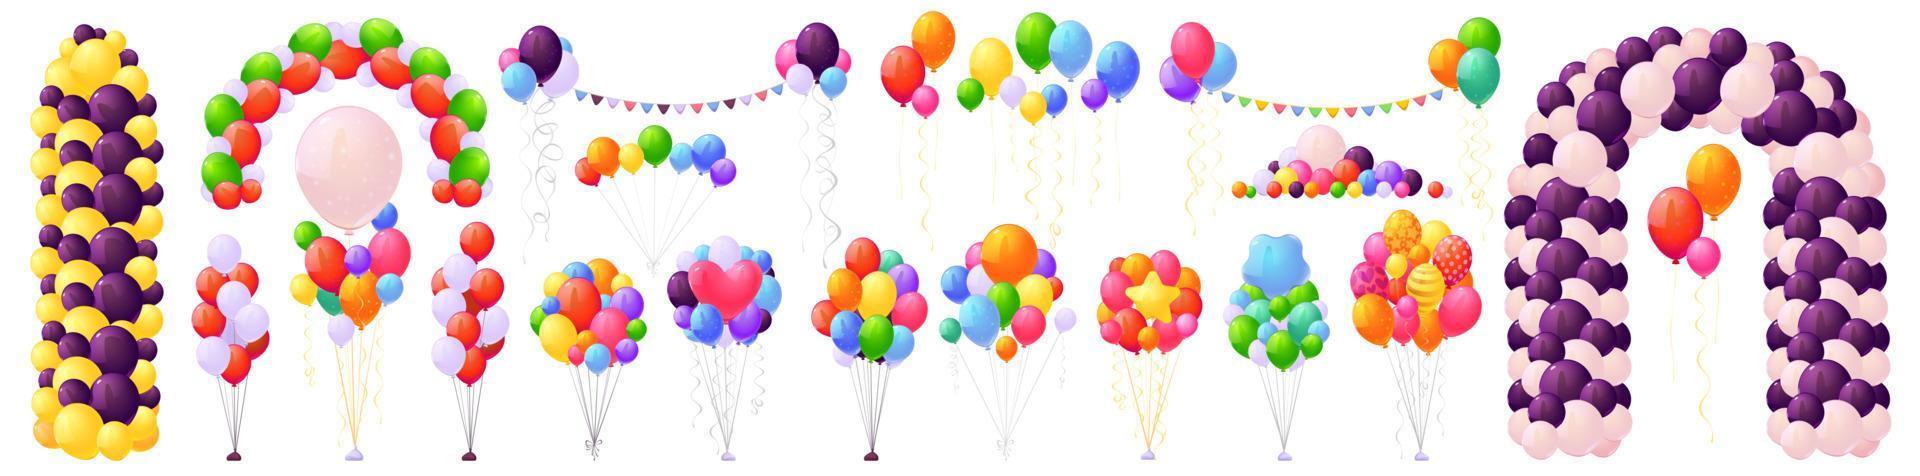 ensemble de ballons, bouquet, arches et guirlandes à l'hélium vecteur